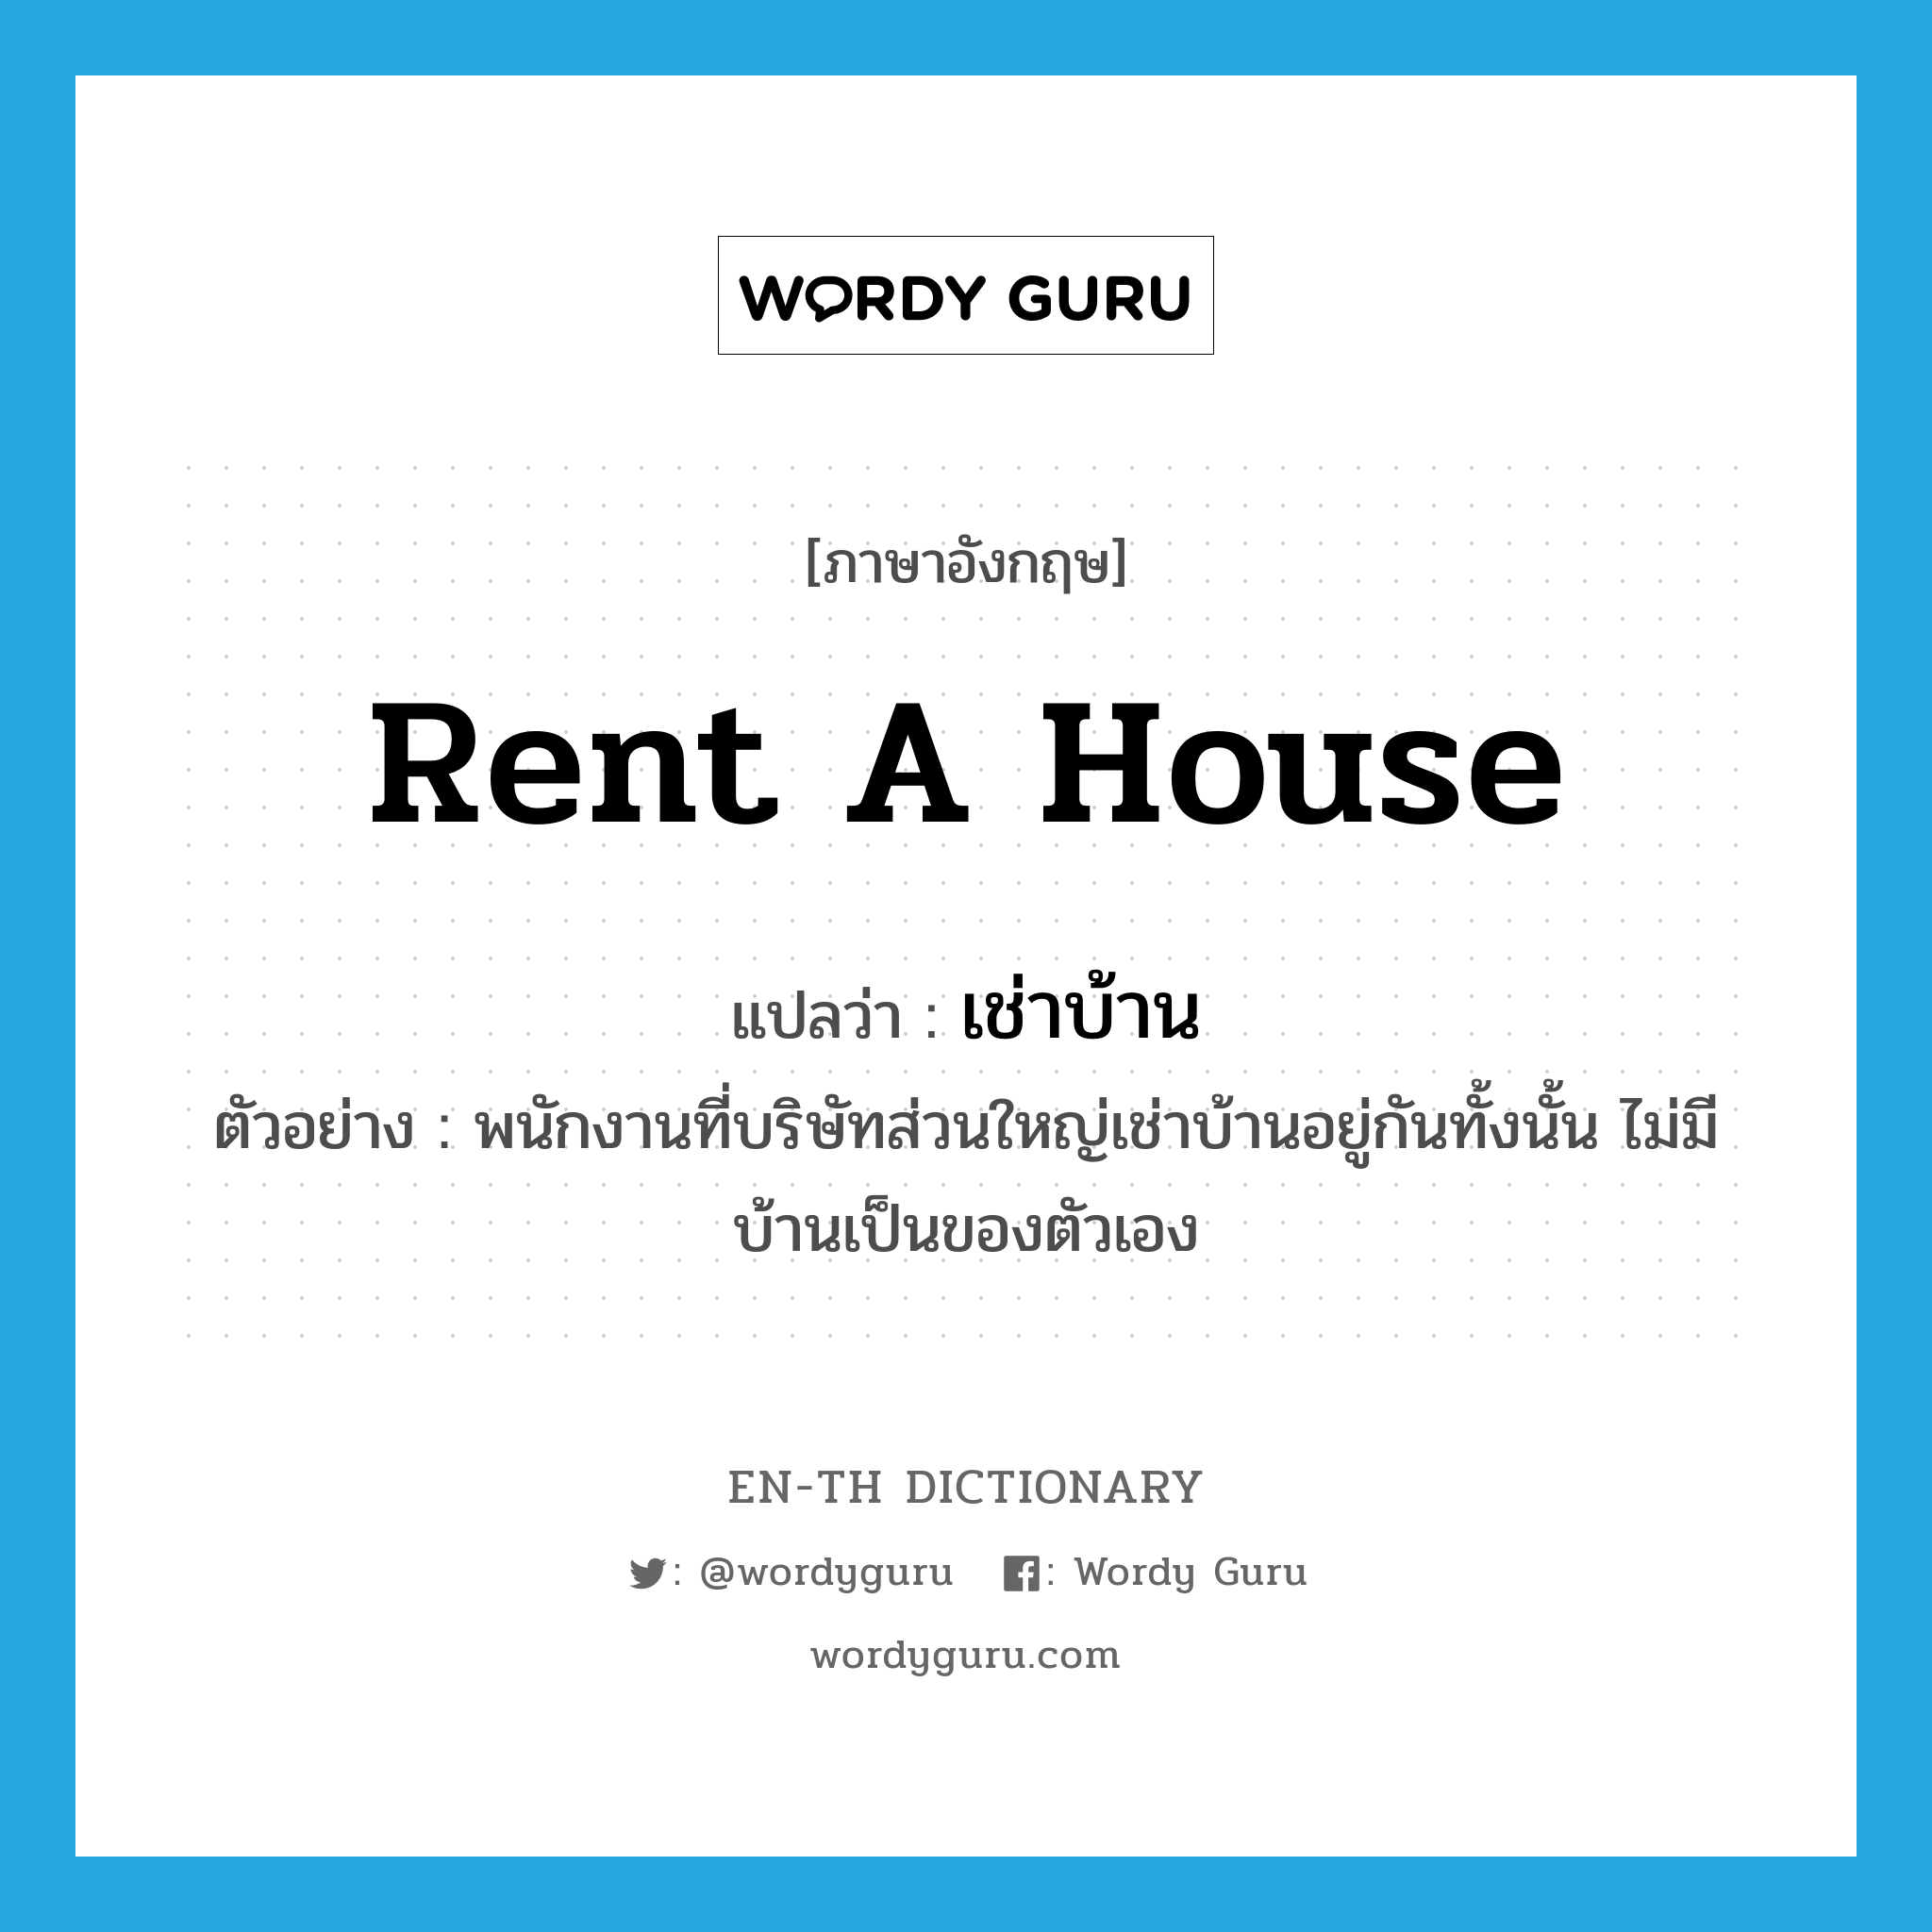 เช่าบ้าน ภาษาอังกฤษ?, คำศัพท์ภาษาอังกฤษ เช่าบ้าน แปลว่า rent a house ประเภท V ตัวอย่าง พนักงานที่บริษัทส่วนใหญ่เช่าบ้านอยู่กันทั้งนั้น ไม่มีบ้านเป็นของตัวเอง หมวด V